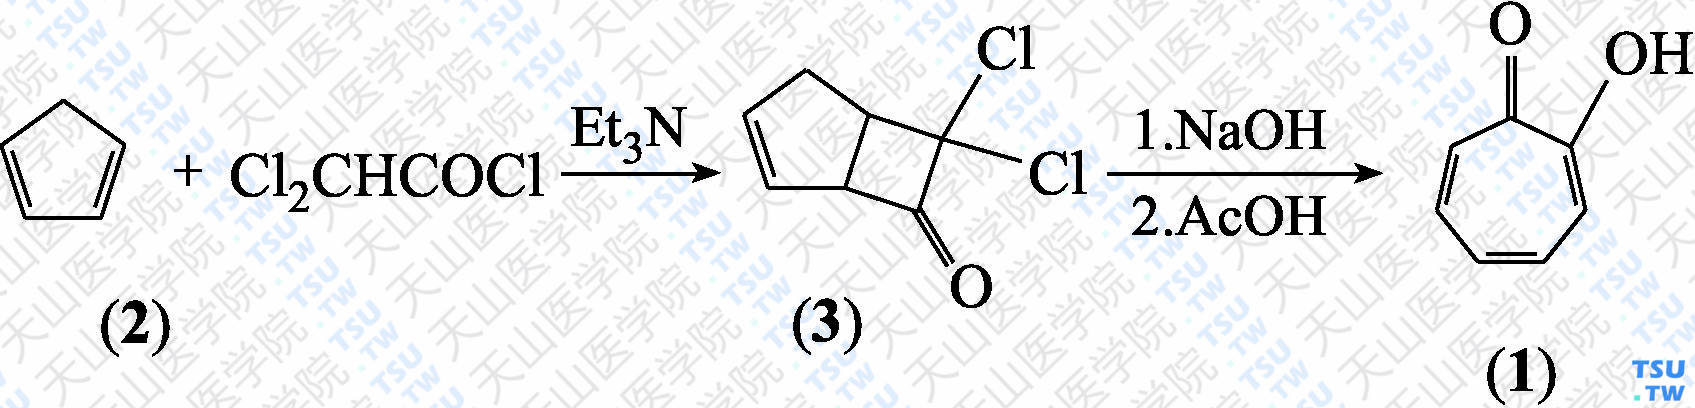 环庚三烯酚酮（2-羟基-2，4，6-环庚三烯-1-酮）（分子式：C<sub>7</sub>H<sub>6</sub>O<sub>2</sub>）的合成方法路线及其结构式